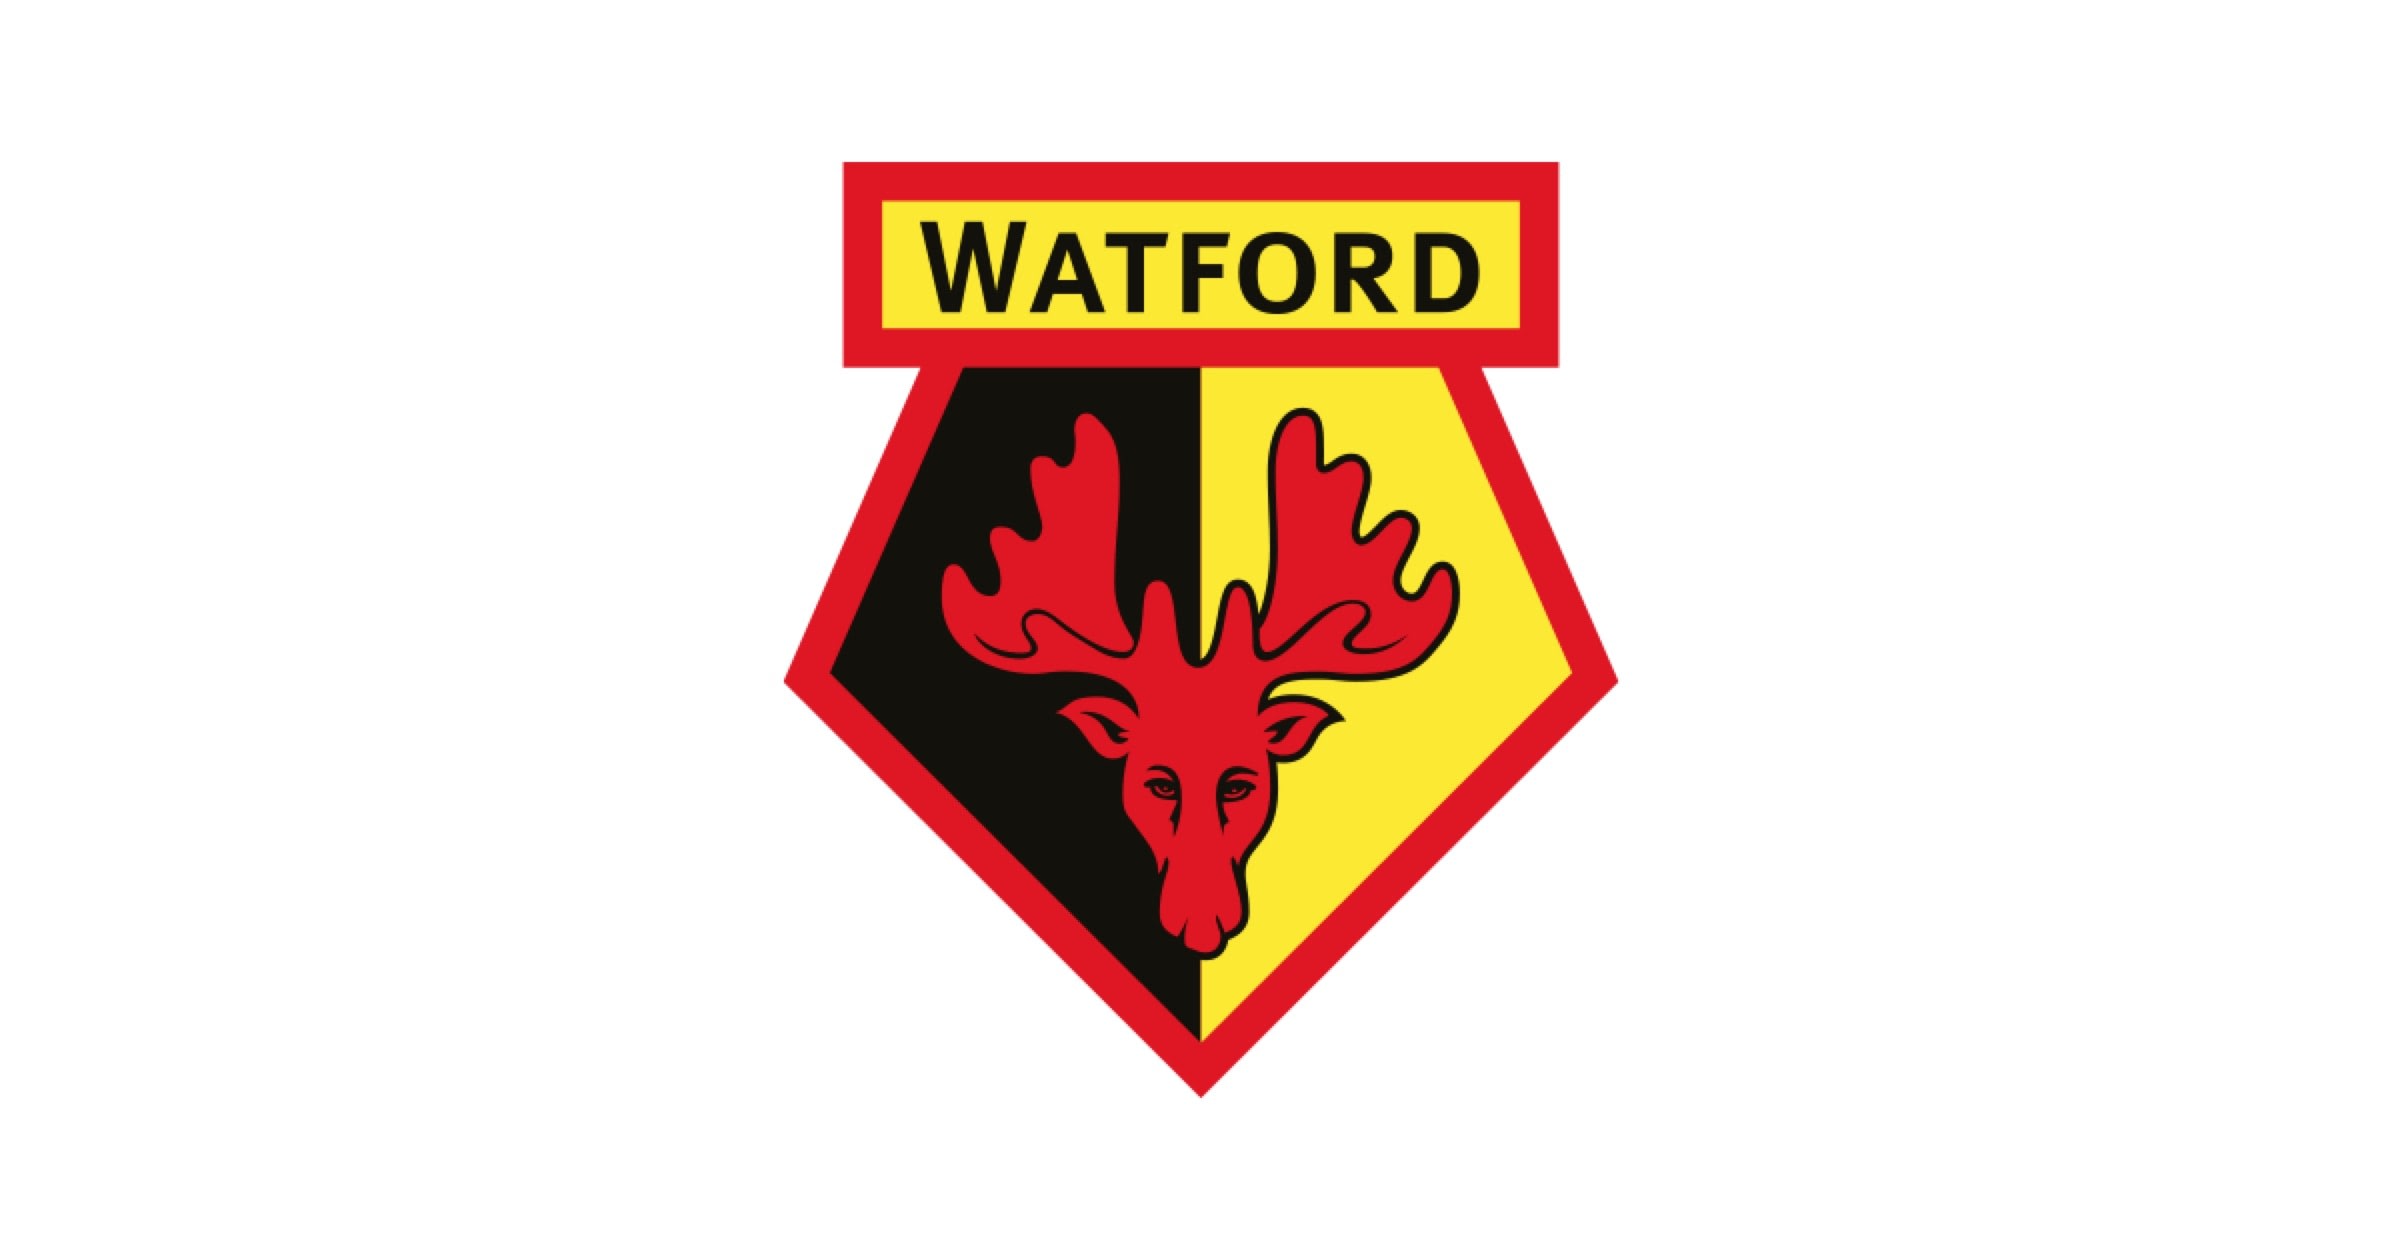 The Watford Fan